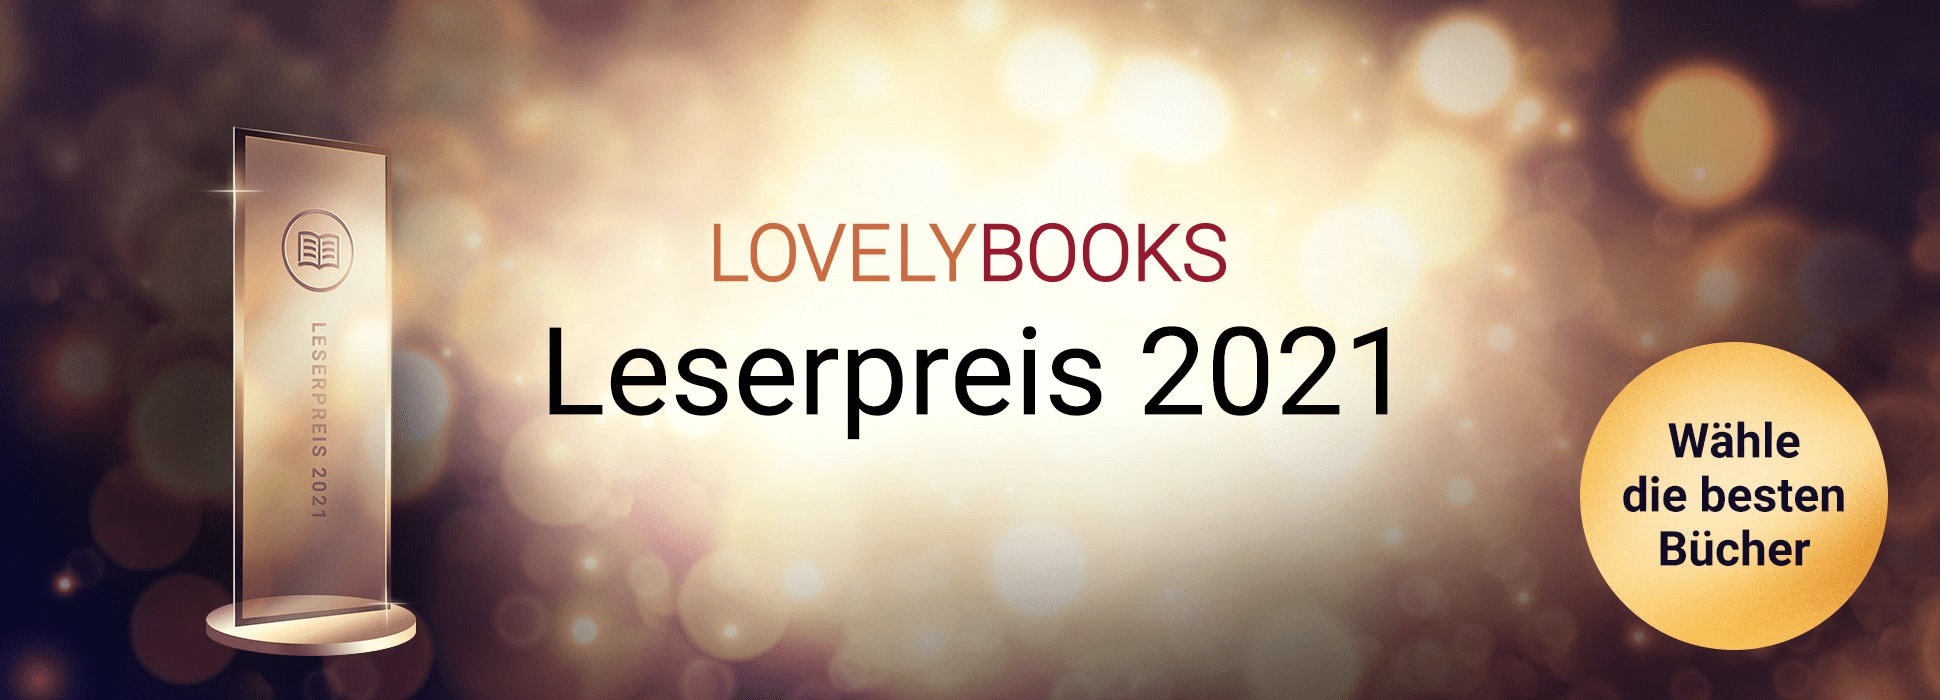 Lovely-books-leserpreis-2021